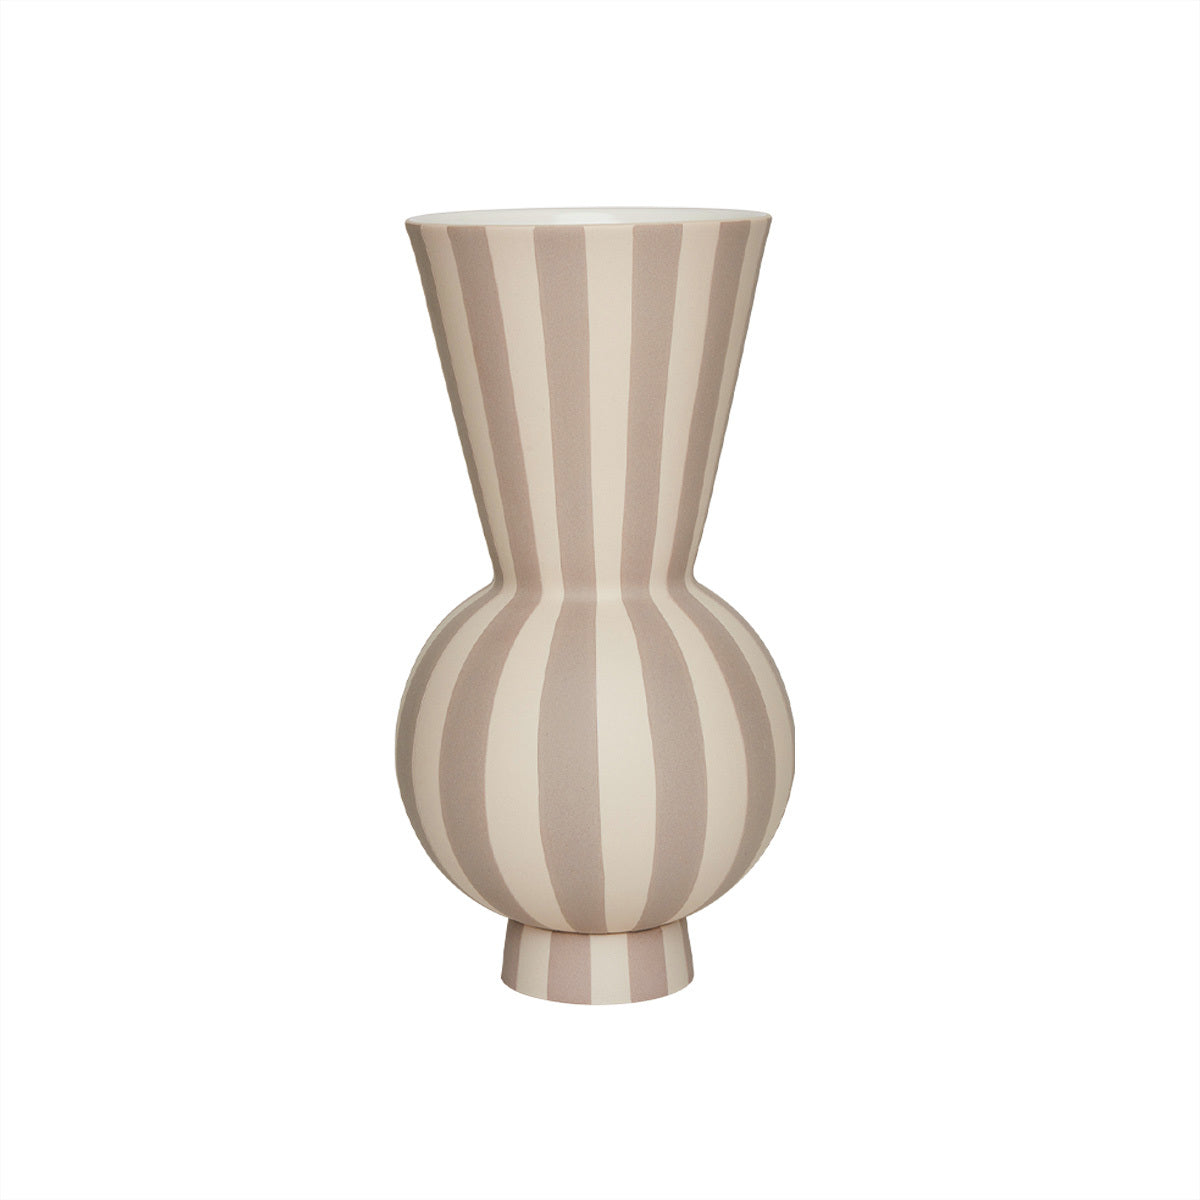 OYOY Vase Toppu 28 cm, Schwarz/Weiss